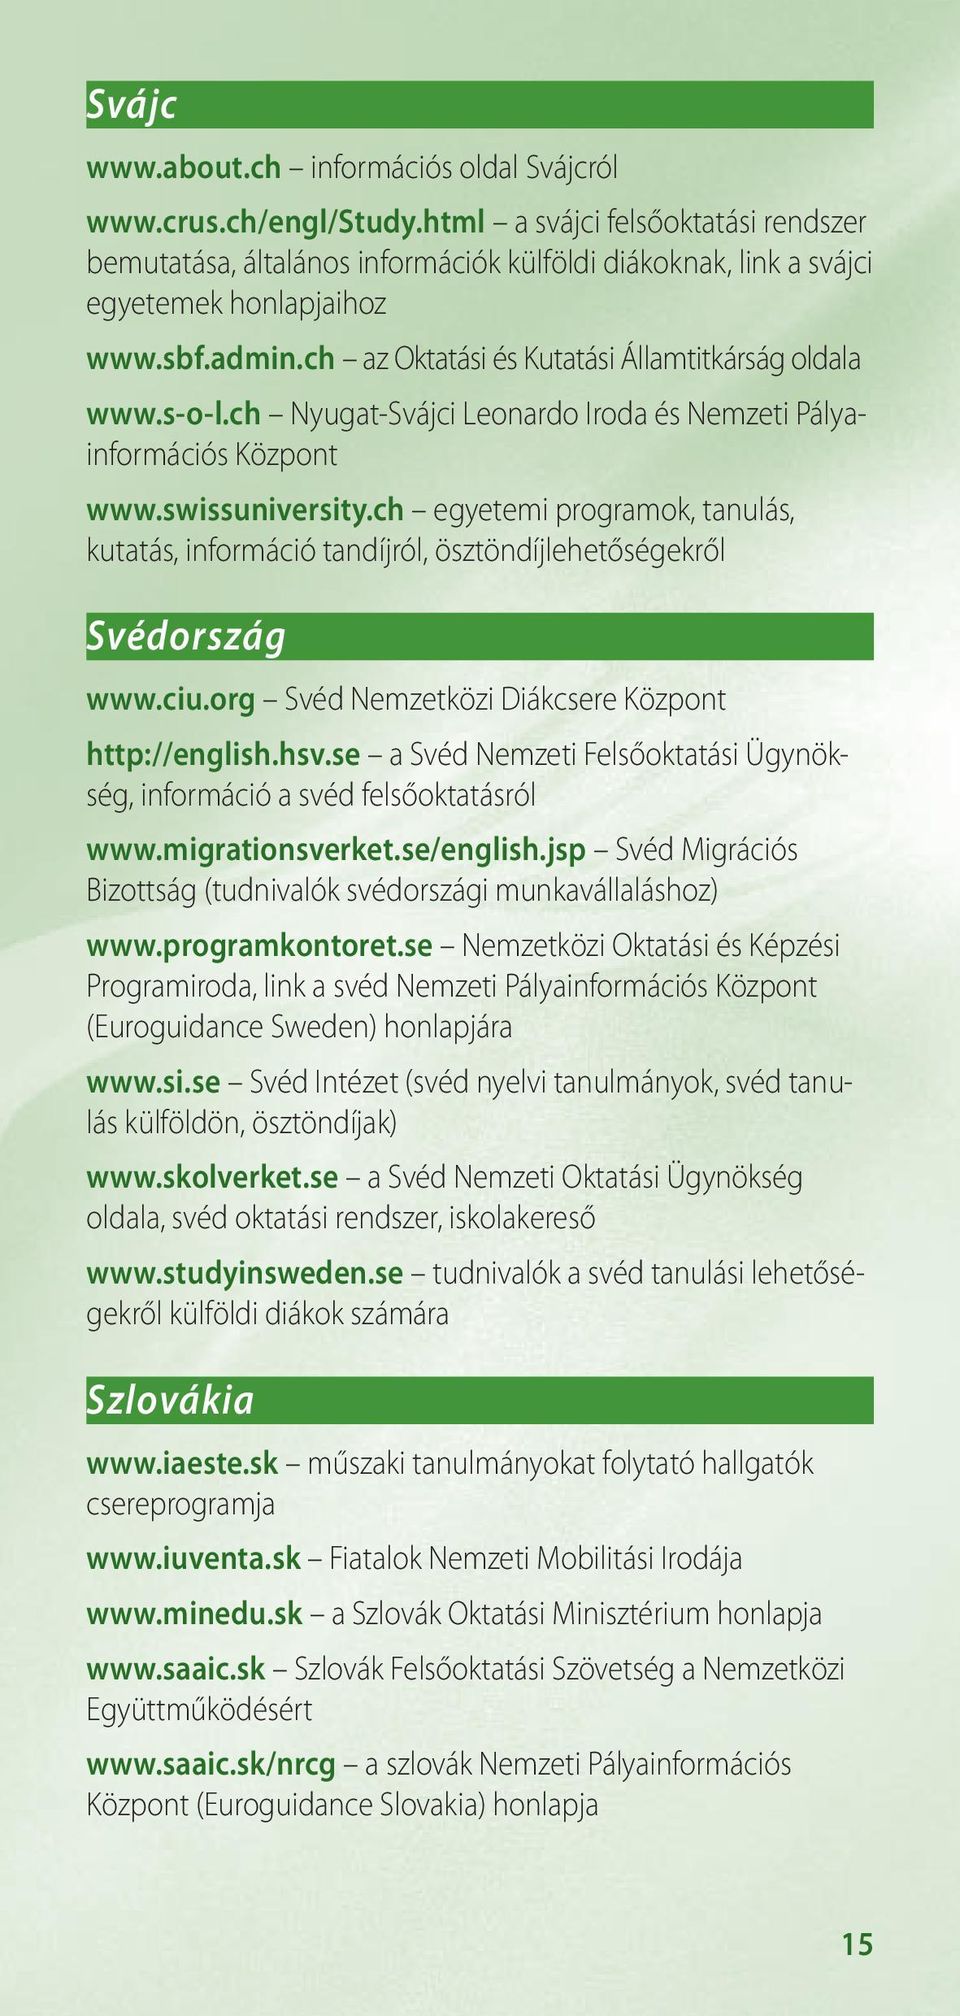 ch egyetemi programok, tanulás, kutatás, információ tandíjról, ösztöndíjlehetőségekről Svédország www.ciu.org Svéd Nemzetközi Diákcsere Központ http://english.hsv.